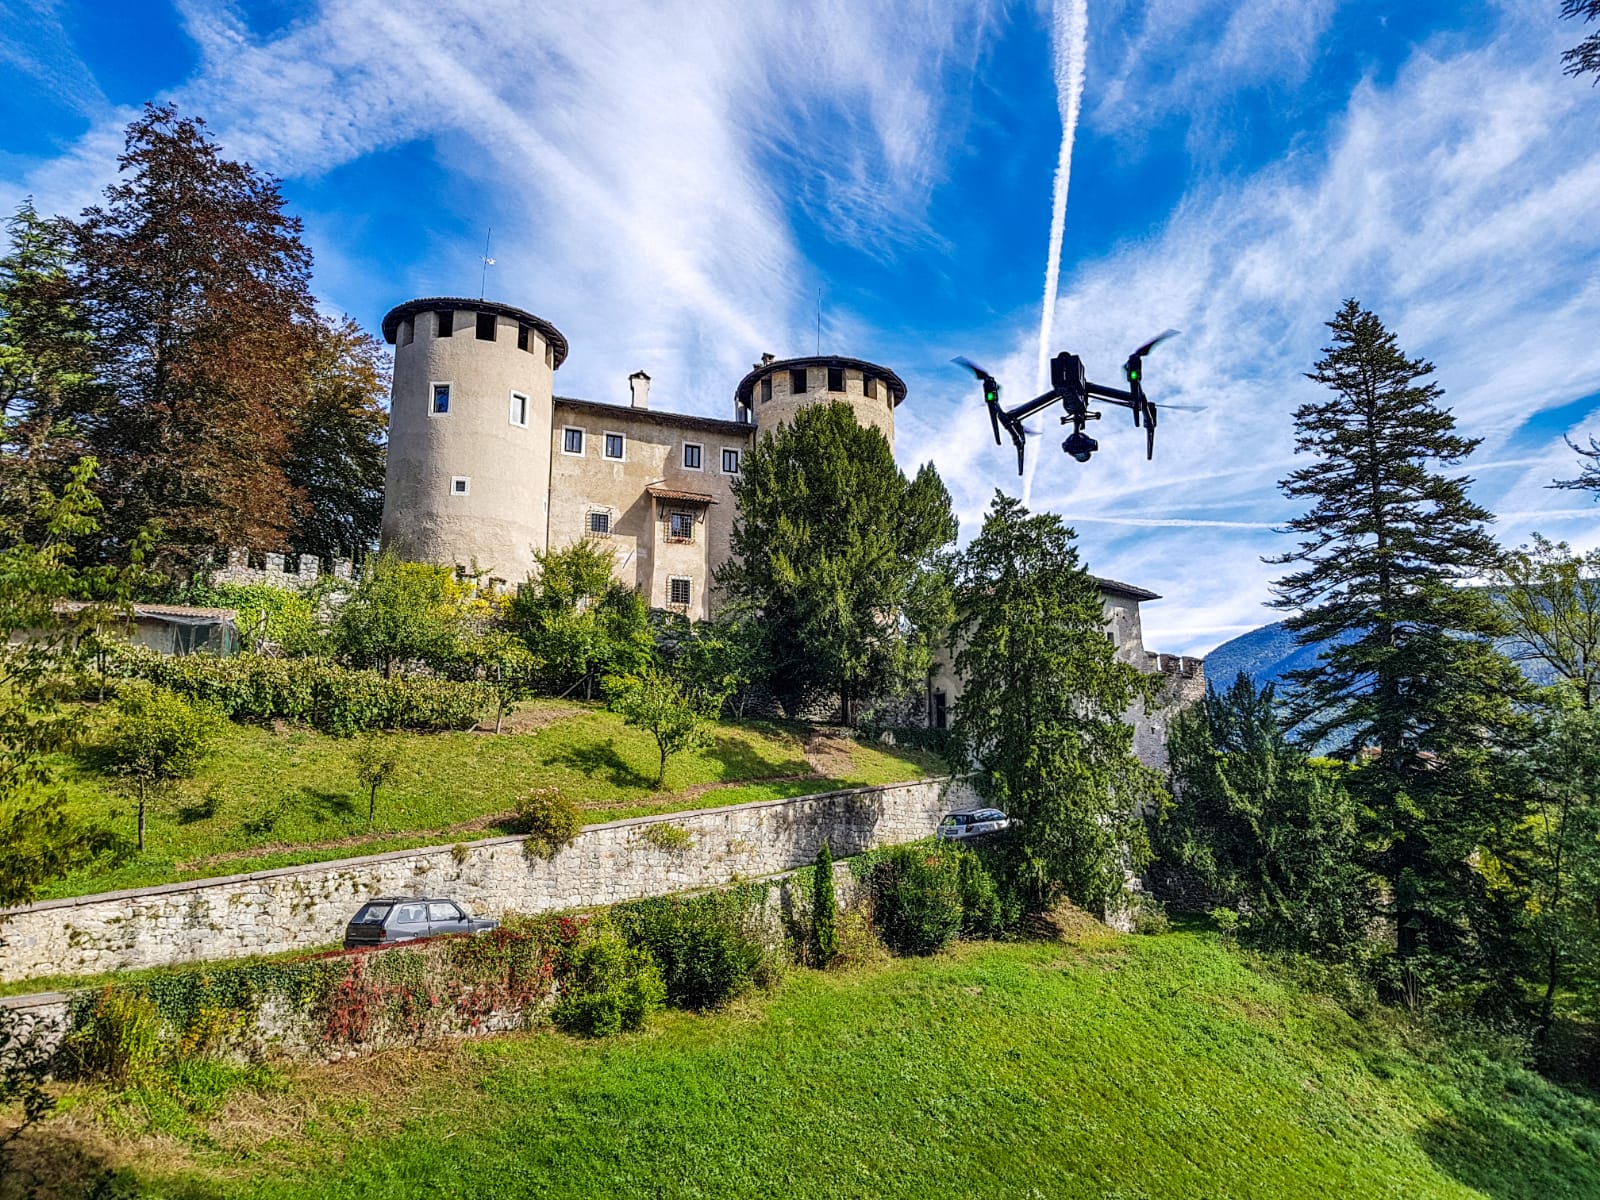 Vsoar - Trentino Alto Adige